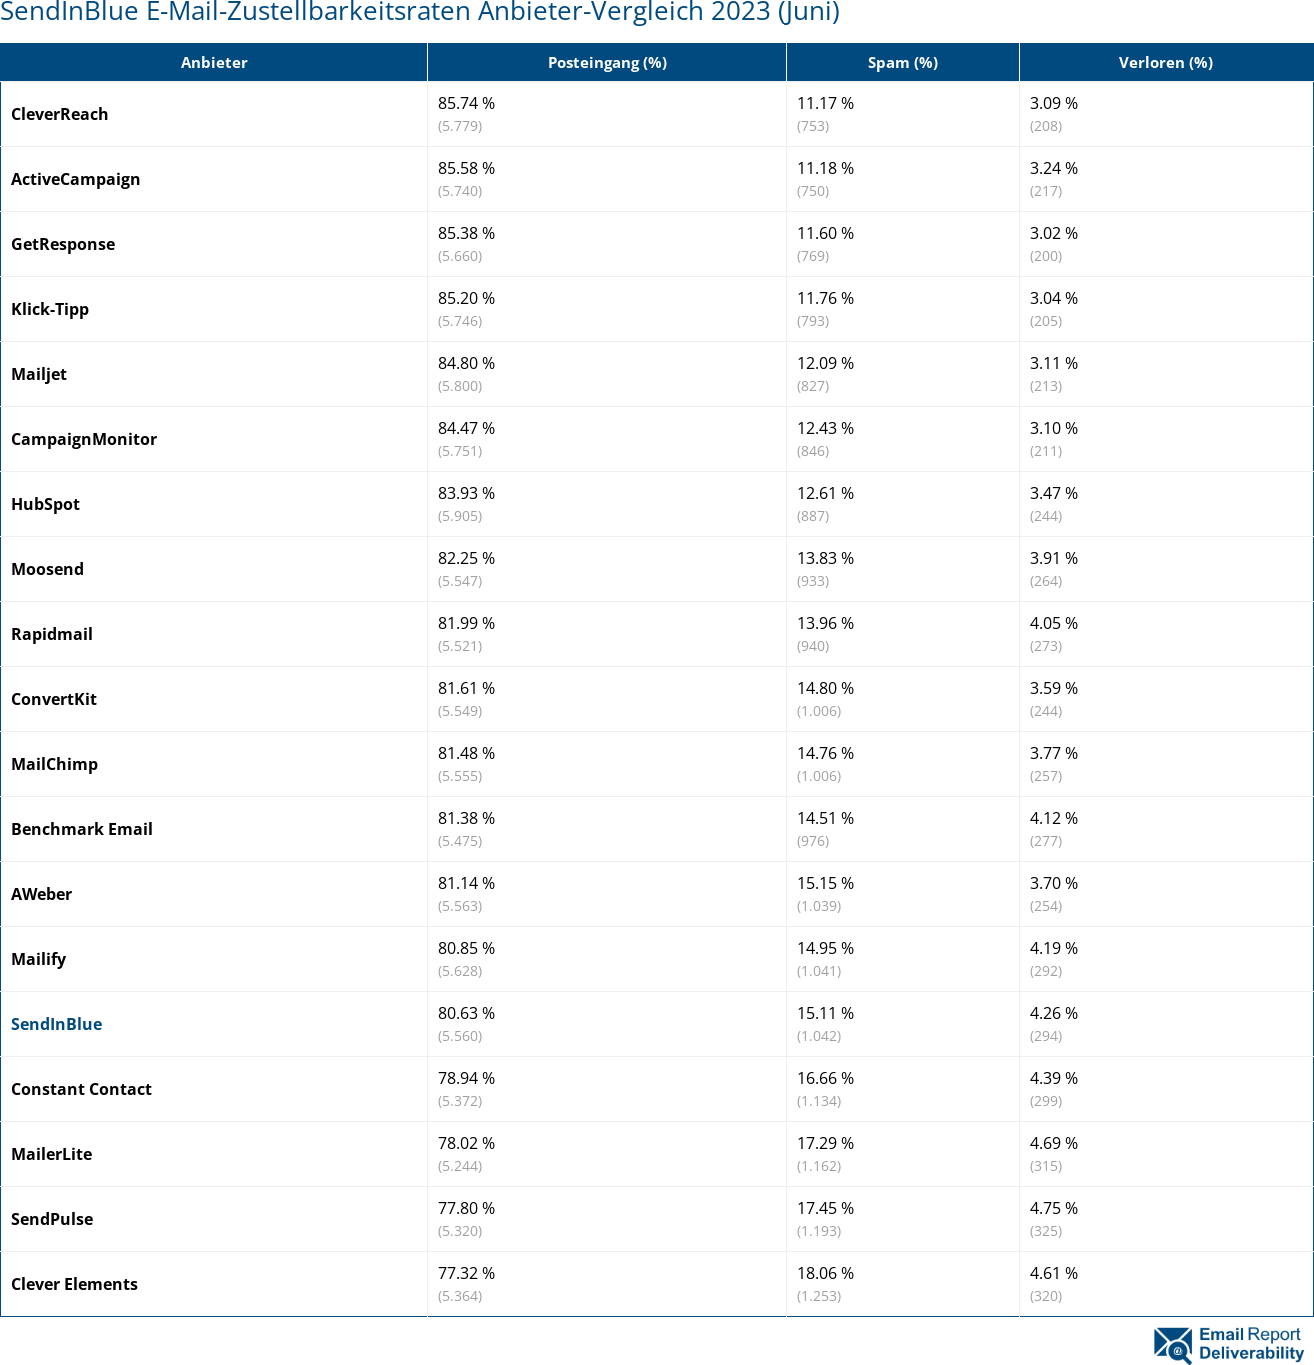 SendInBlue E-Mail-Zustellbarkeitsraten Anbieter-Vergleich 2023 (Juni)